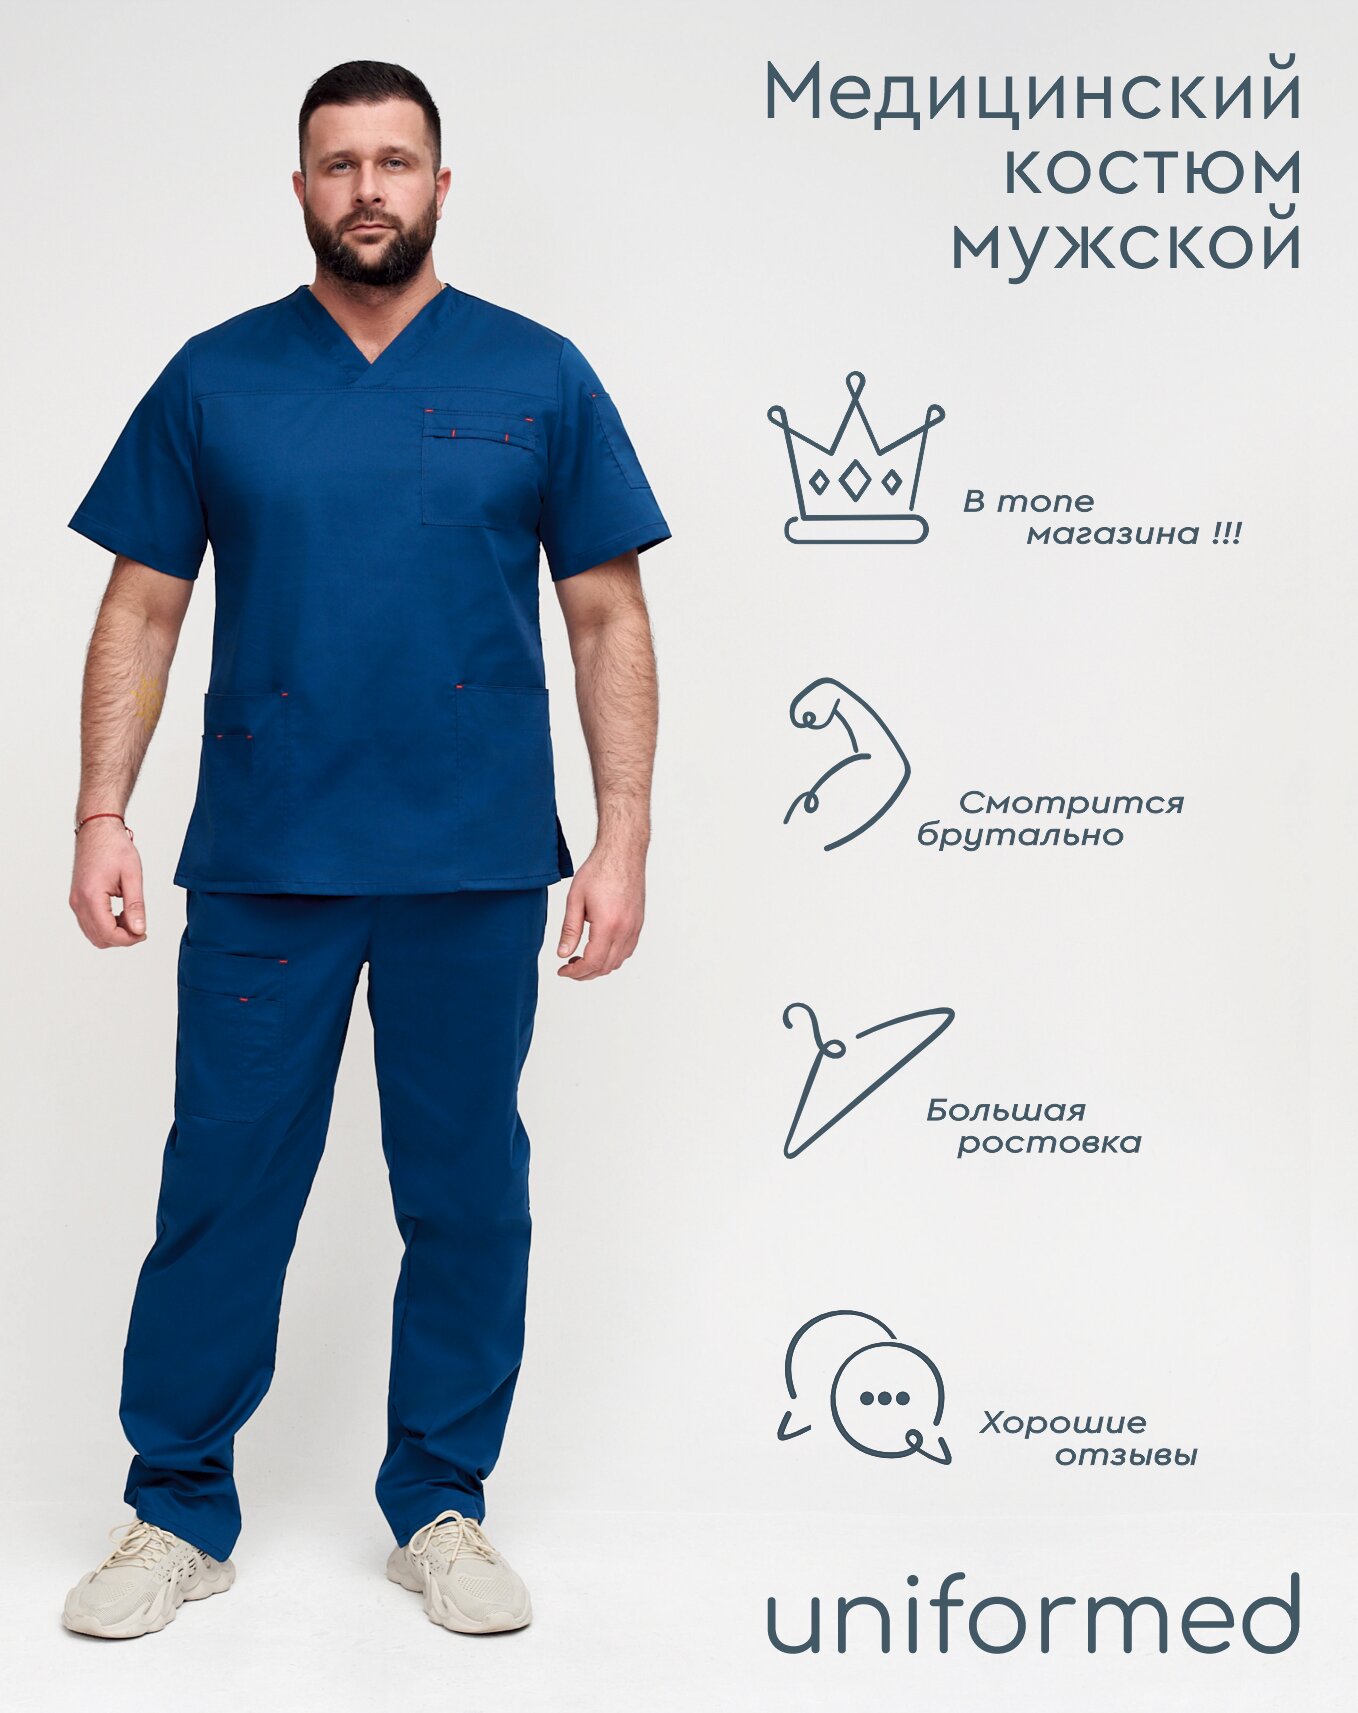 Медицинский мужской костюм 385.4.4 Uniformed, ткань сатори стрейч, рукав короткий, цвет синий, отделка красная, рост 188, размер 58